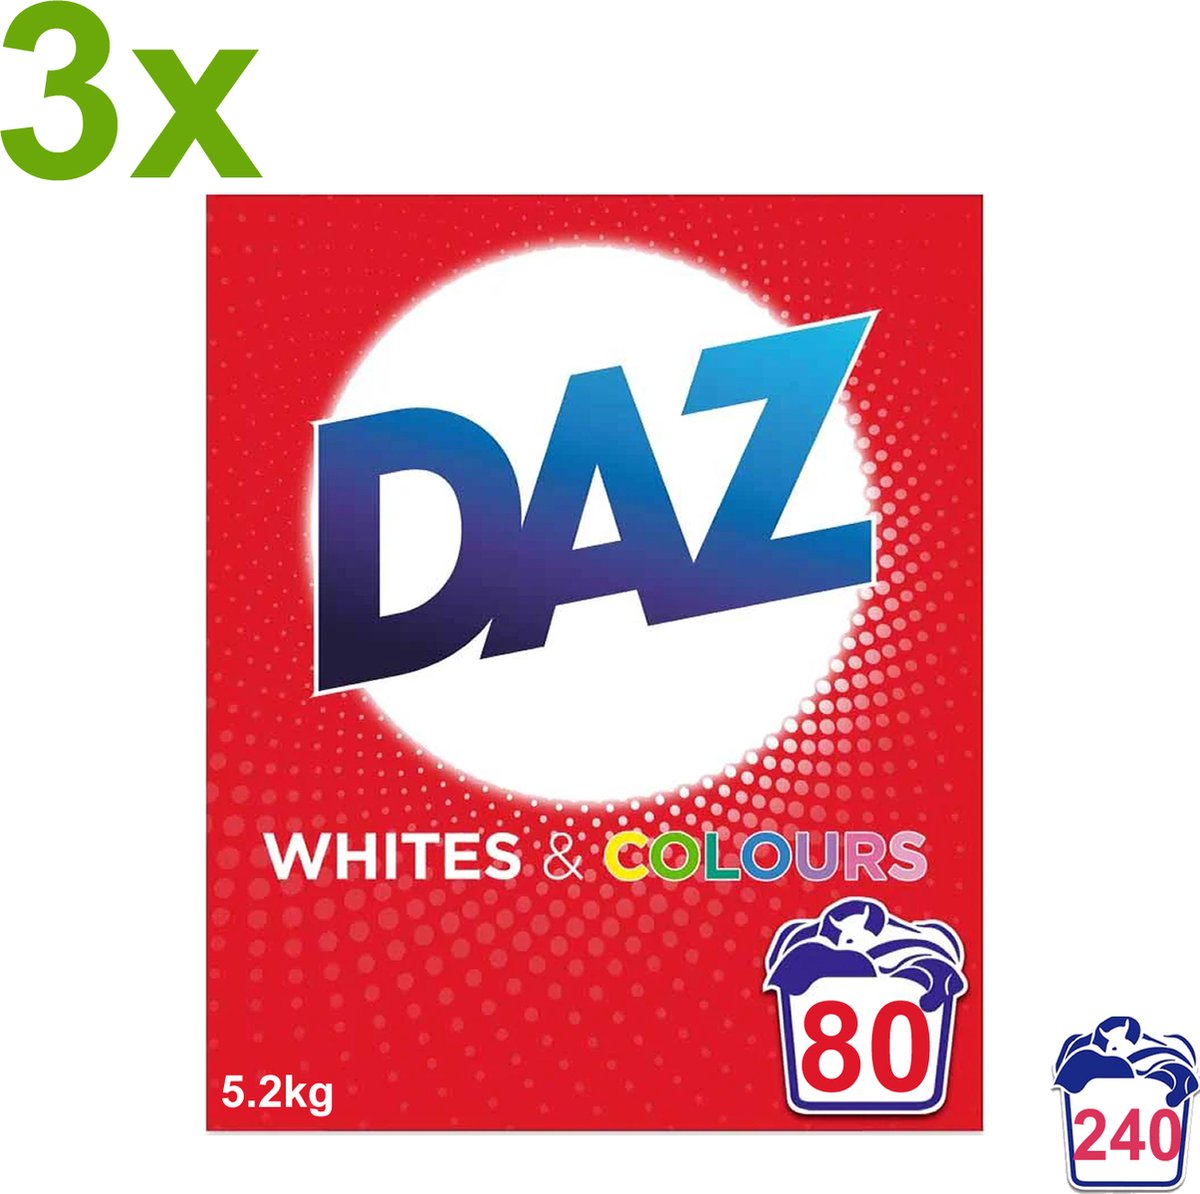 DAZ - Whites & Colours - Waspoeder - Wasmiddel - 3x 5.2kg - 240 Wasbeurten - Voordeelverpakking